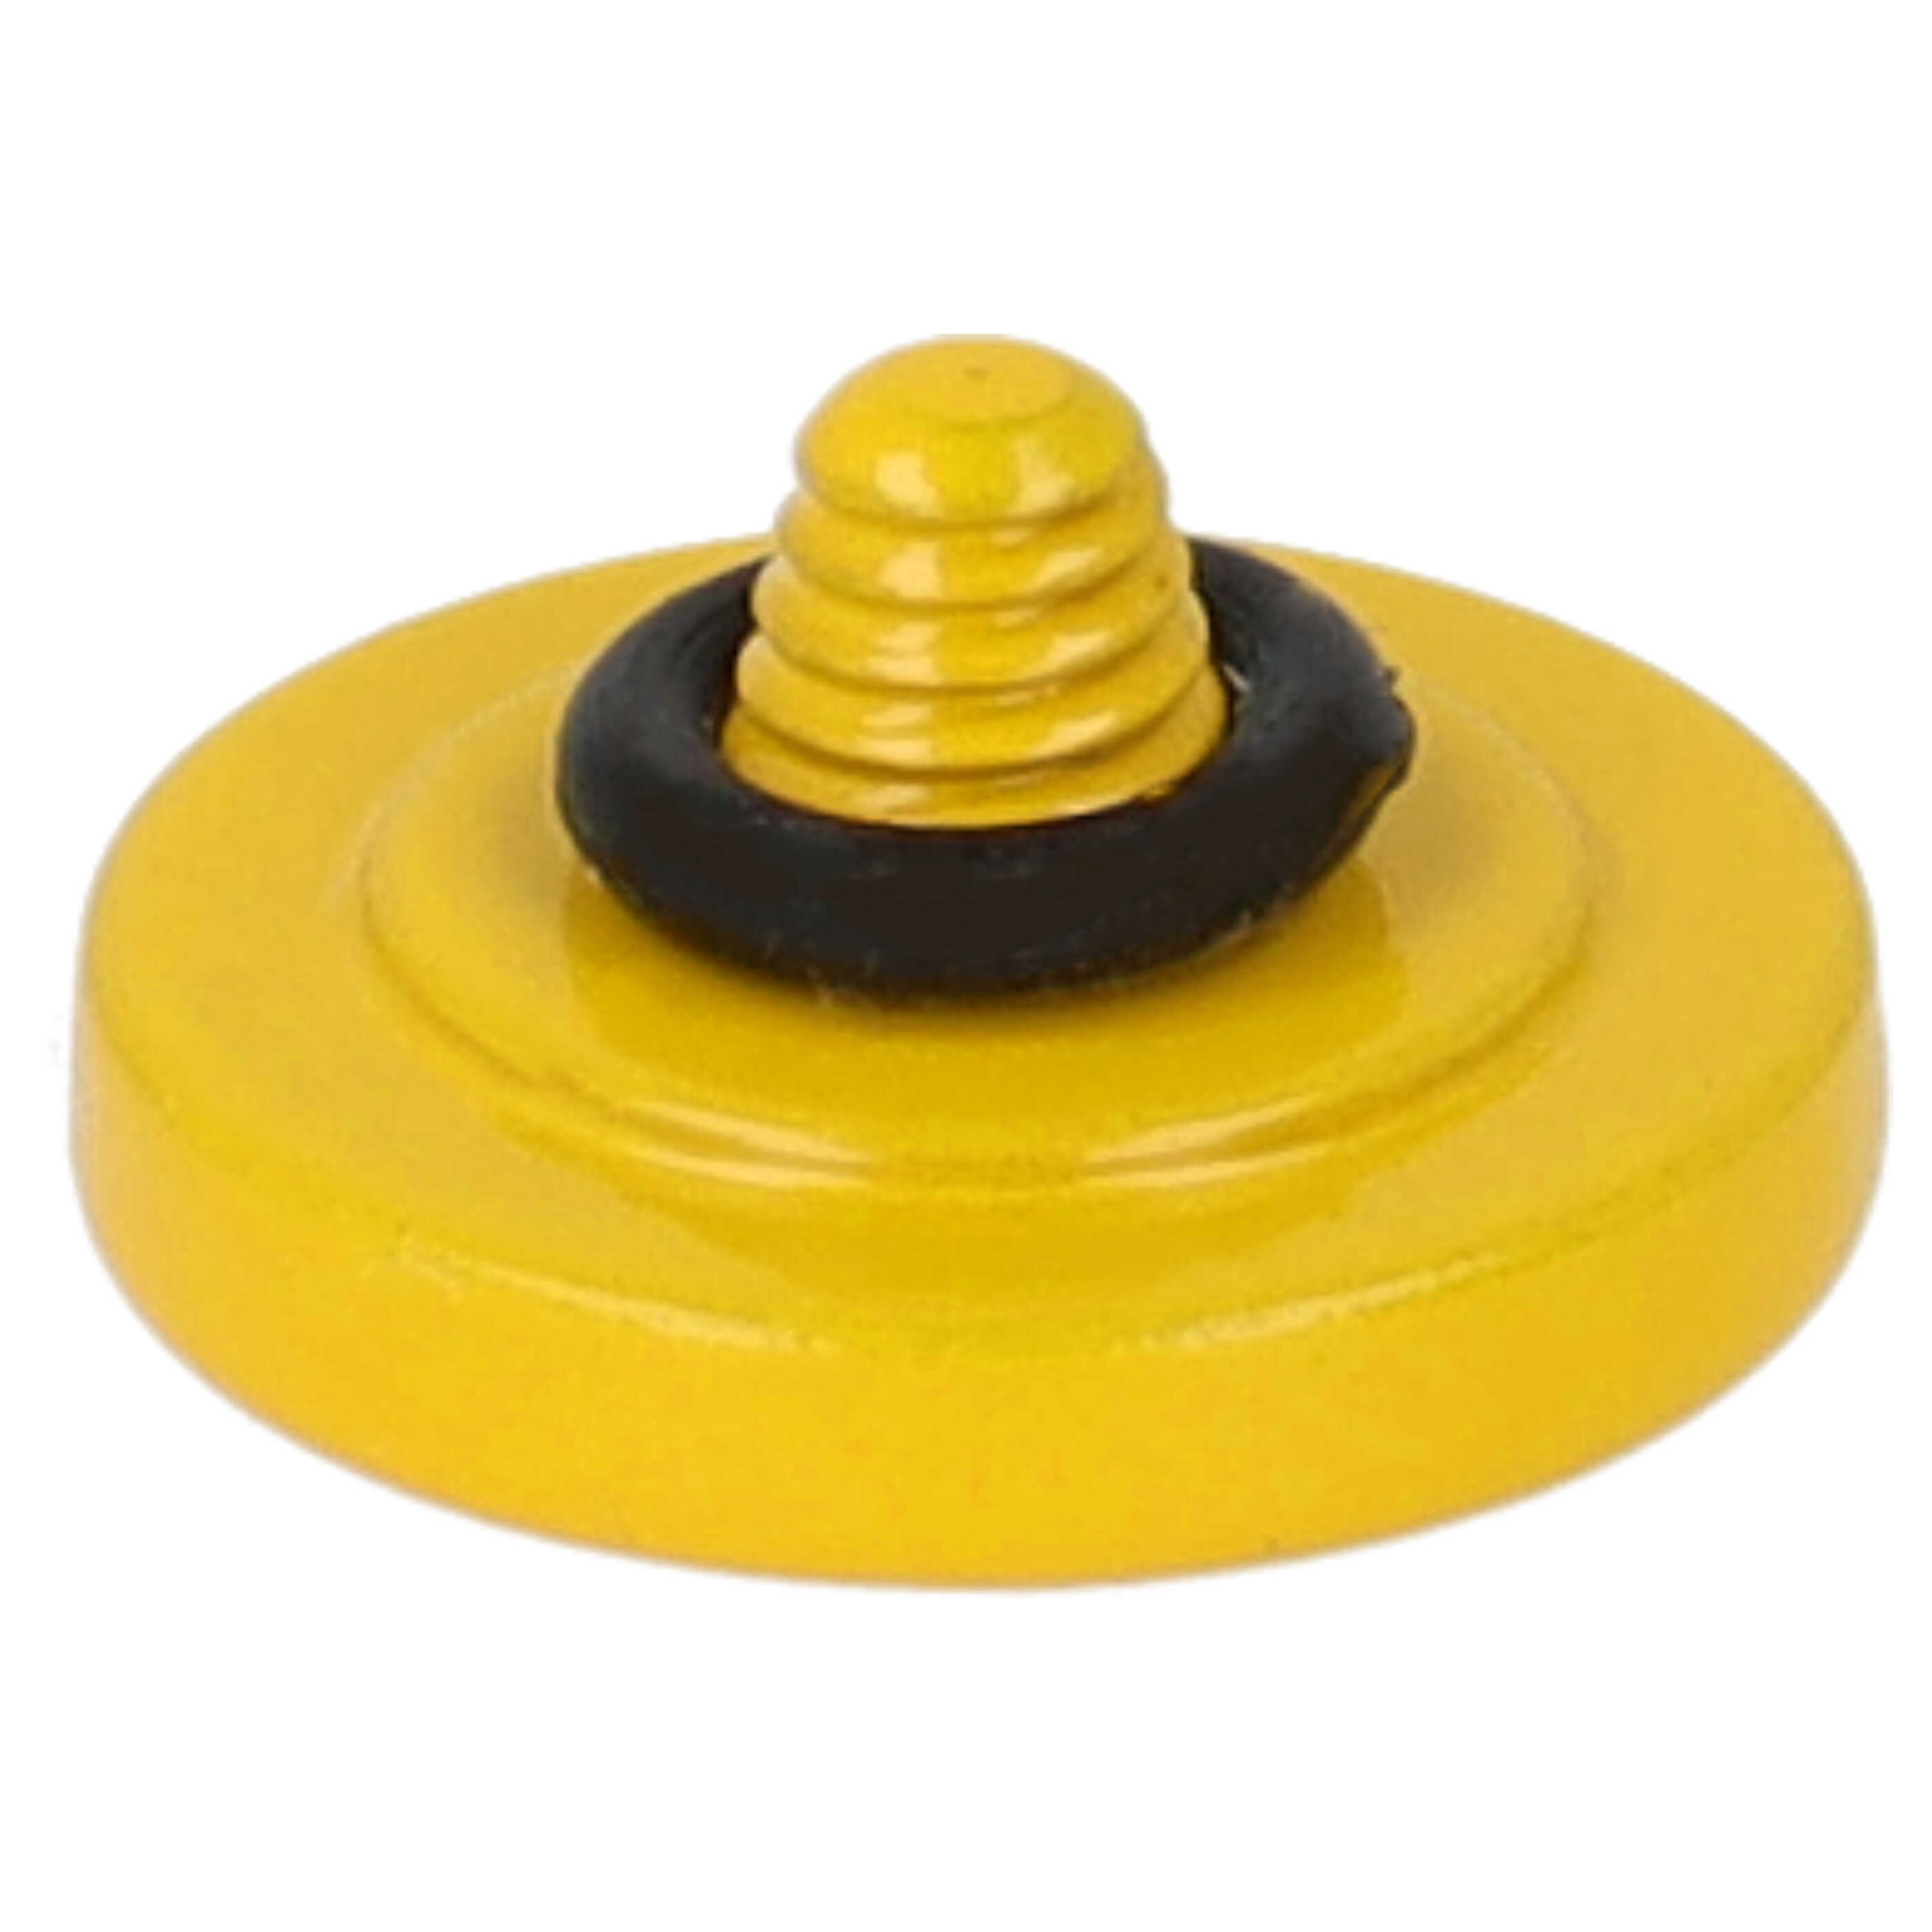 Release Button suitable for X-E1 FujifilmCamera etc. - Metal, Yellow